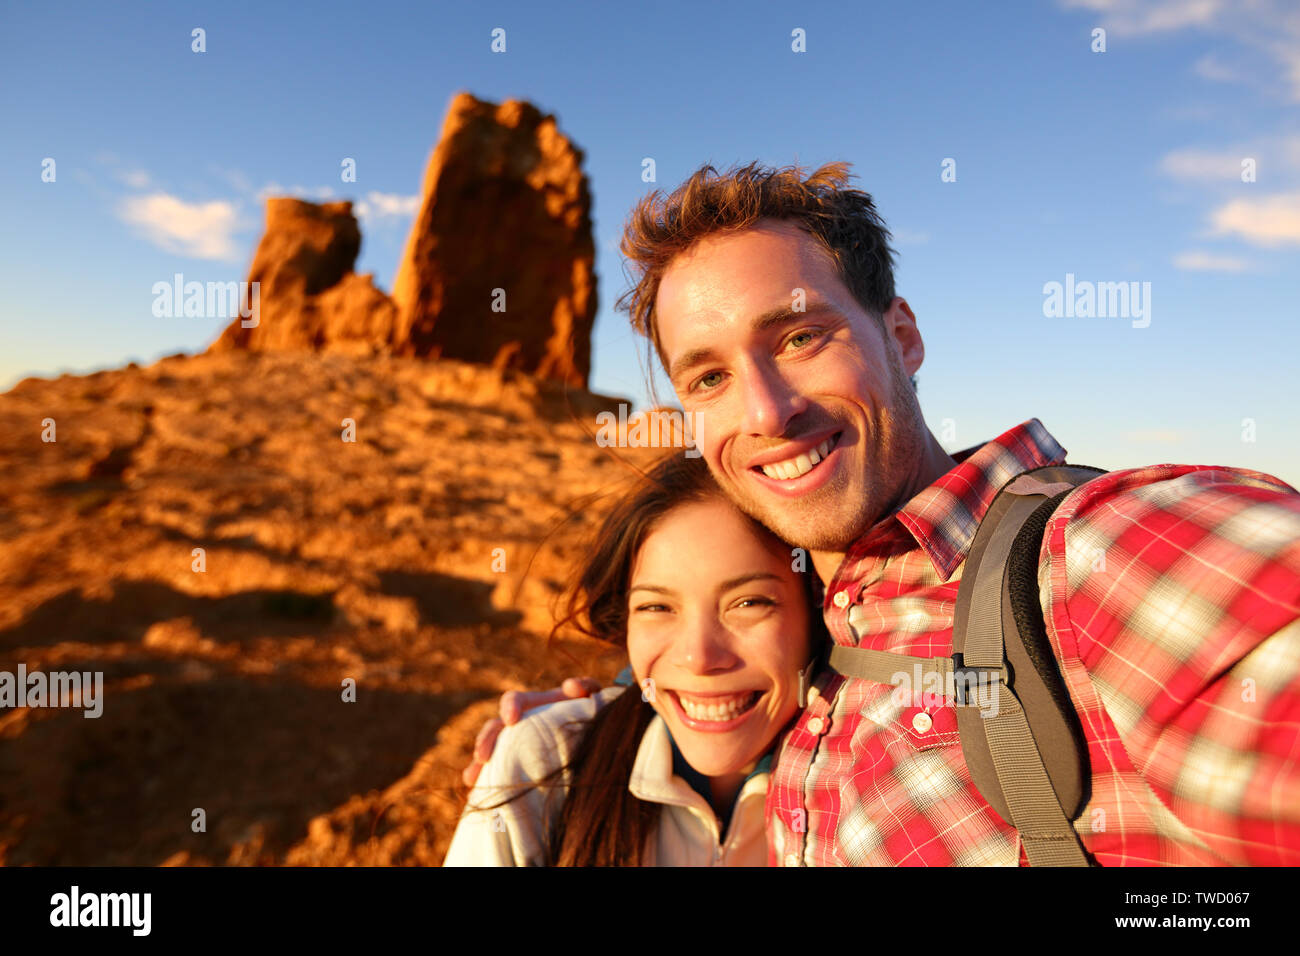 Glückliches Paar unter selfie Selbstportrait Foto wandern. Zwei Freunde oder Geliebte auf Wanderung in die Kamera lächeln im Freien Berge von Roque Nublo, Gran Canaria, Kanarische Inseln, Spanien. Stockfoto